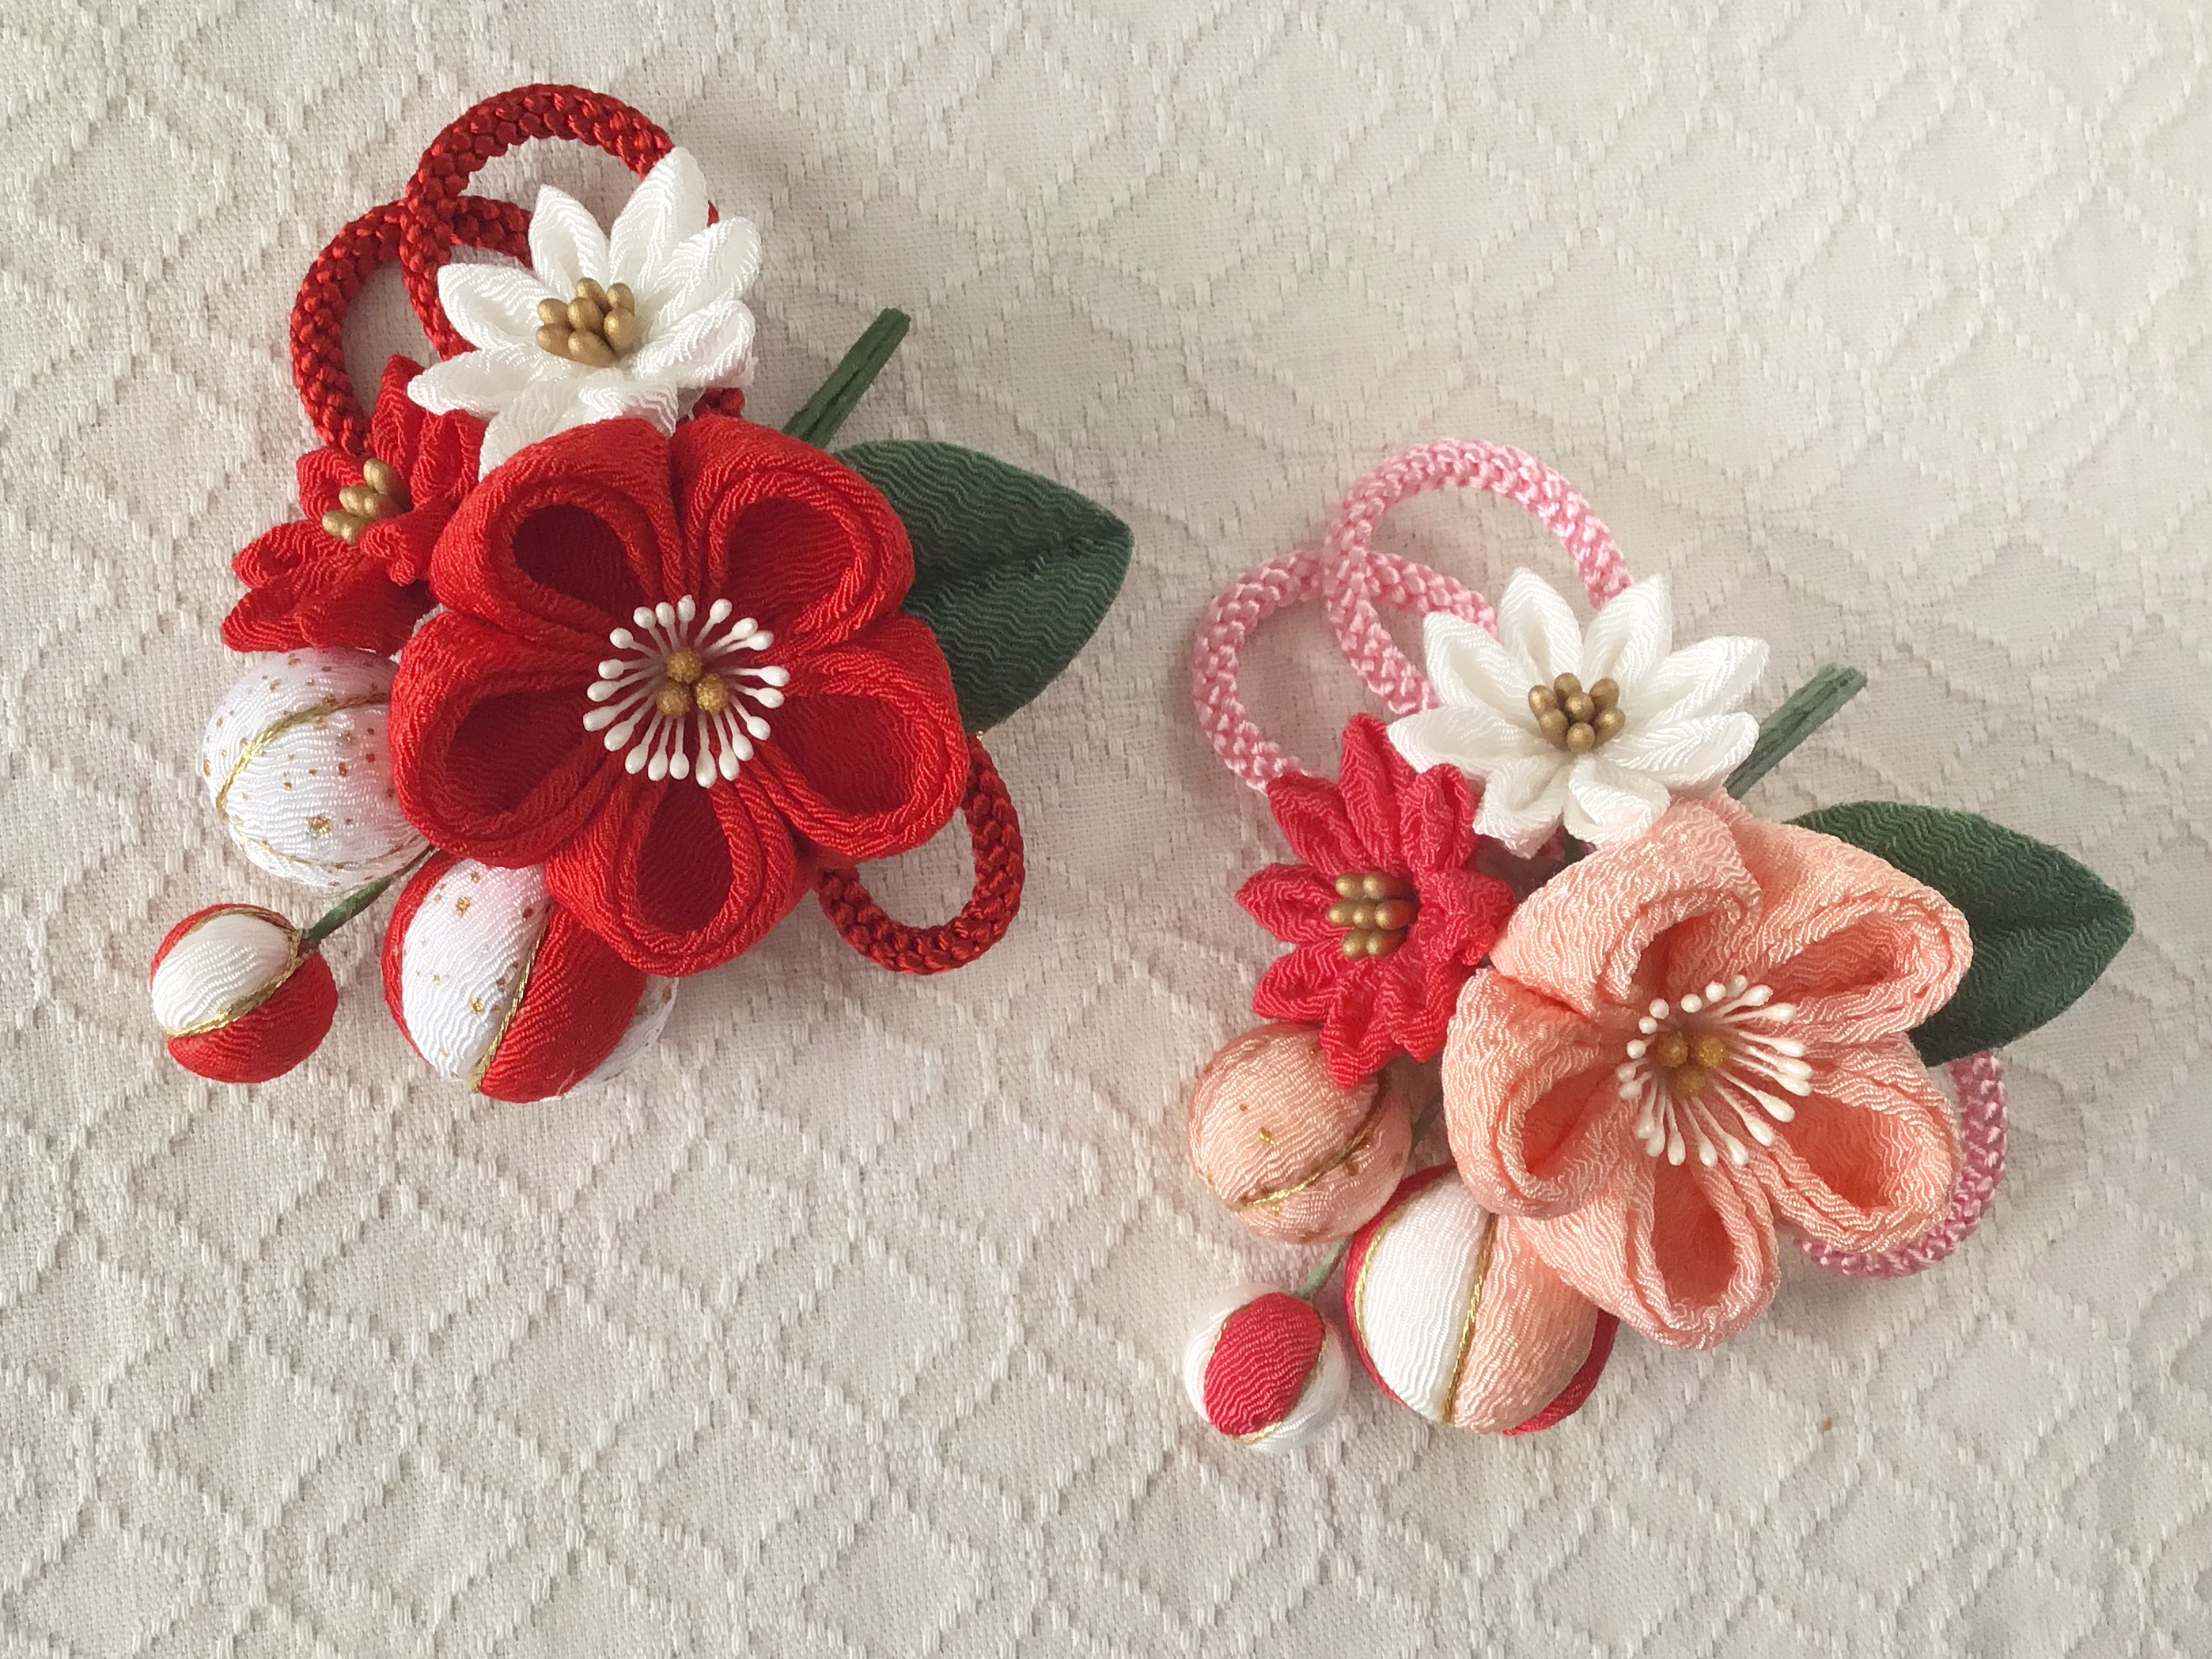 つまみ細工 梅中輪と小菊とちりめん玉の髪飾り 赤 Iichi ハンドメイド クラフト作品 手仕事品の通販